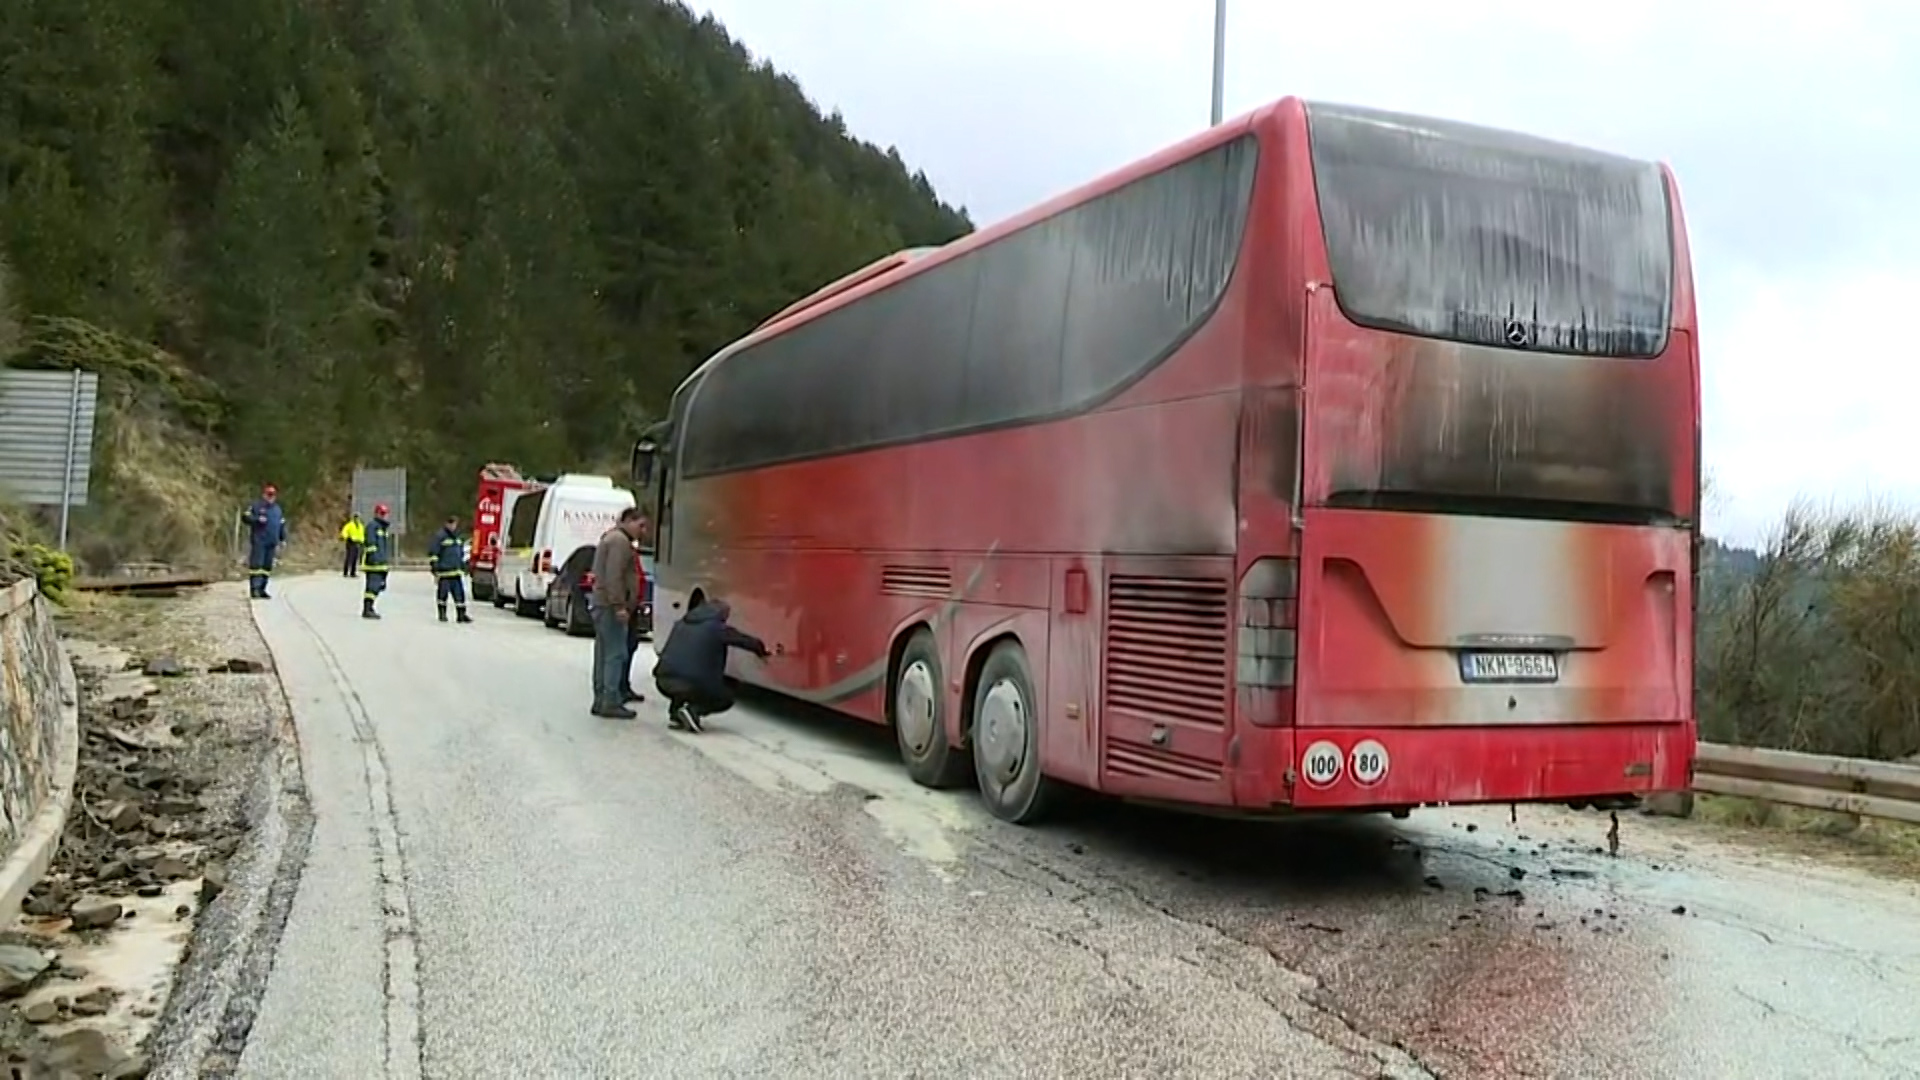 Μέτσοβο: «Μυρίζει έντονα καμένο» – Μαρτυρίες και εικόνες από τη φωτιά σε λεωφορείο